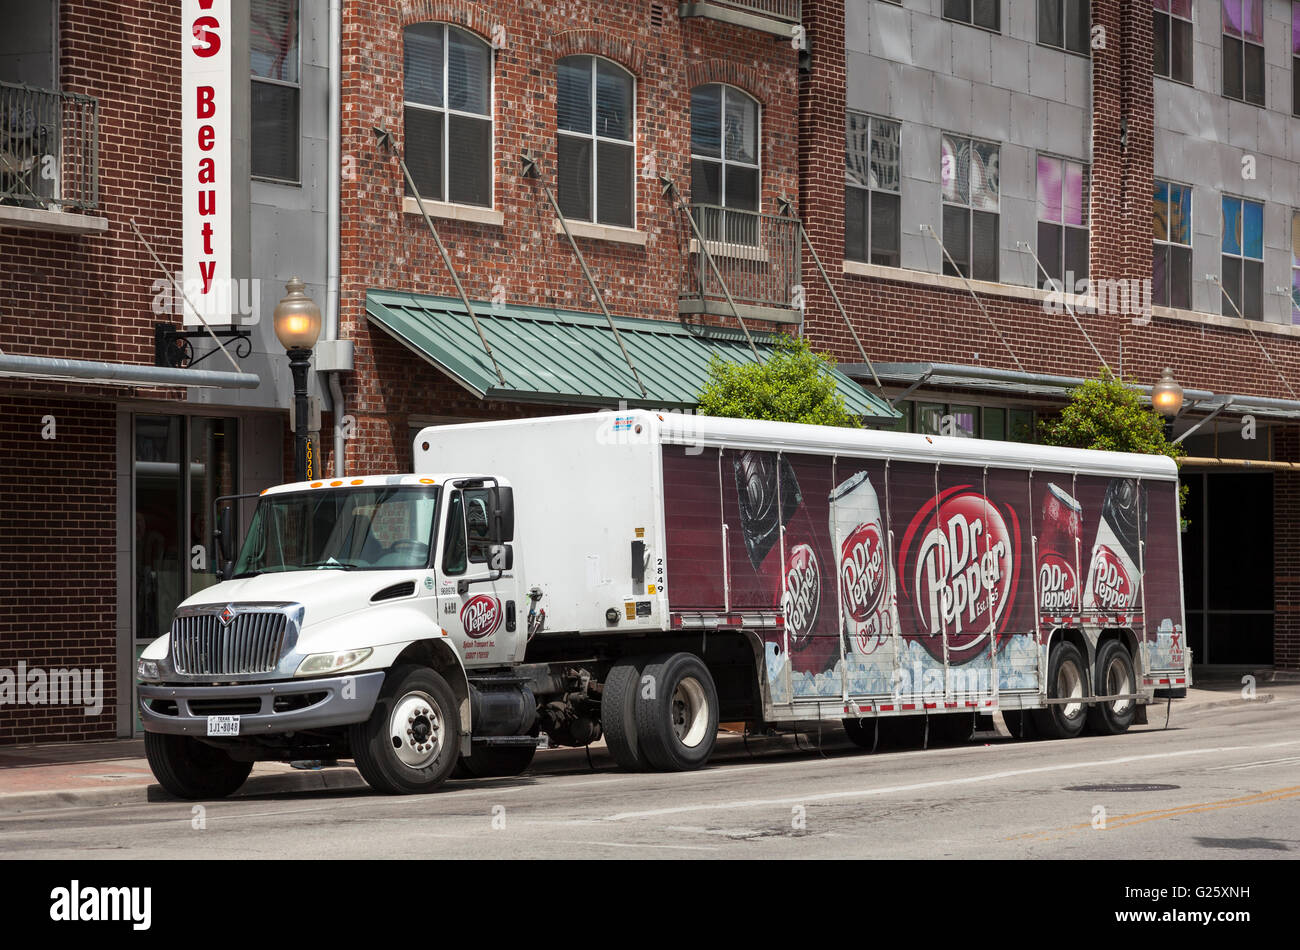 Dr Pepper truck in Dallas, Texas, USA Stock Photo